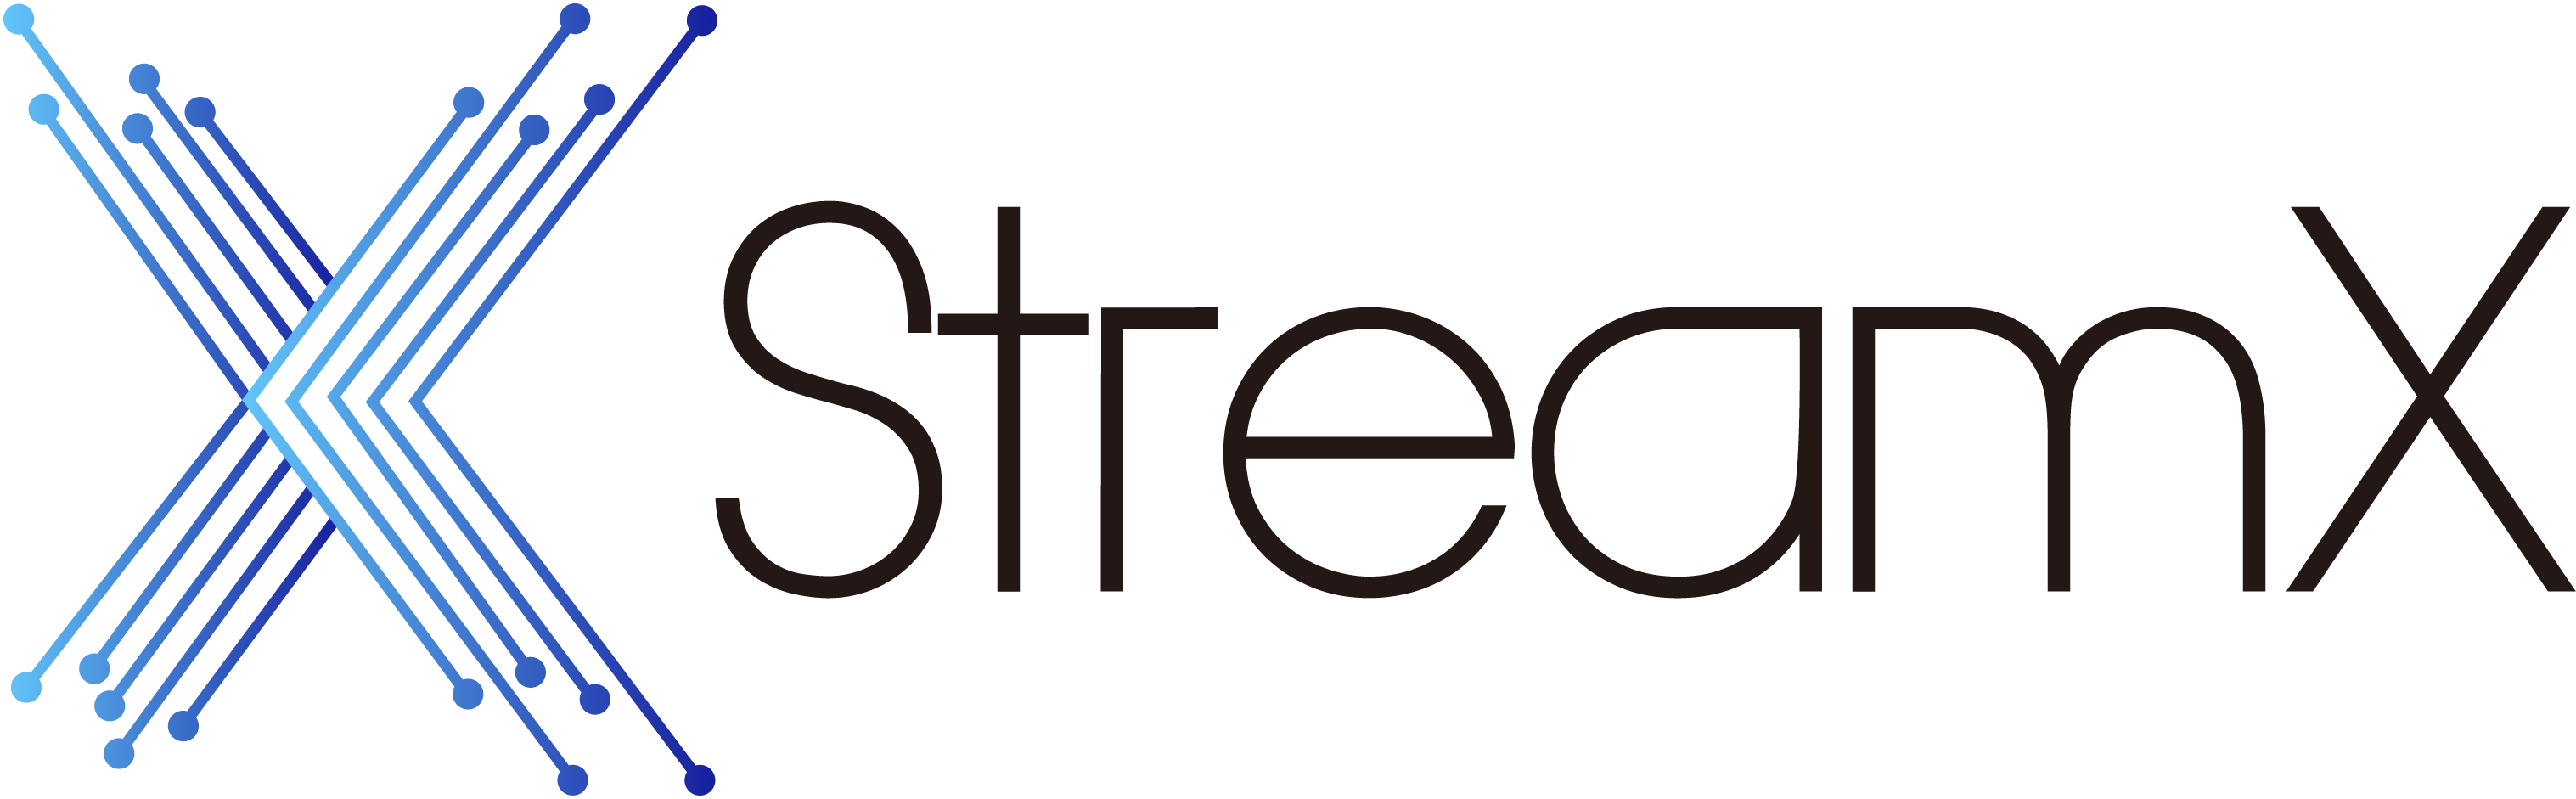 StreamX logo